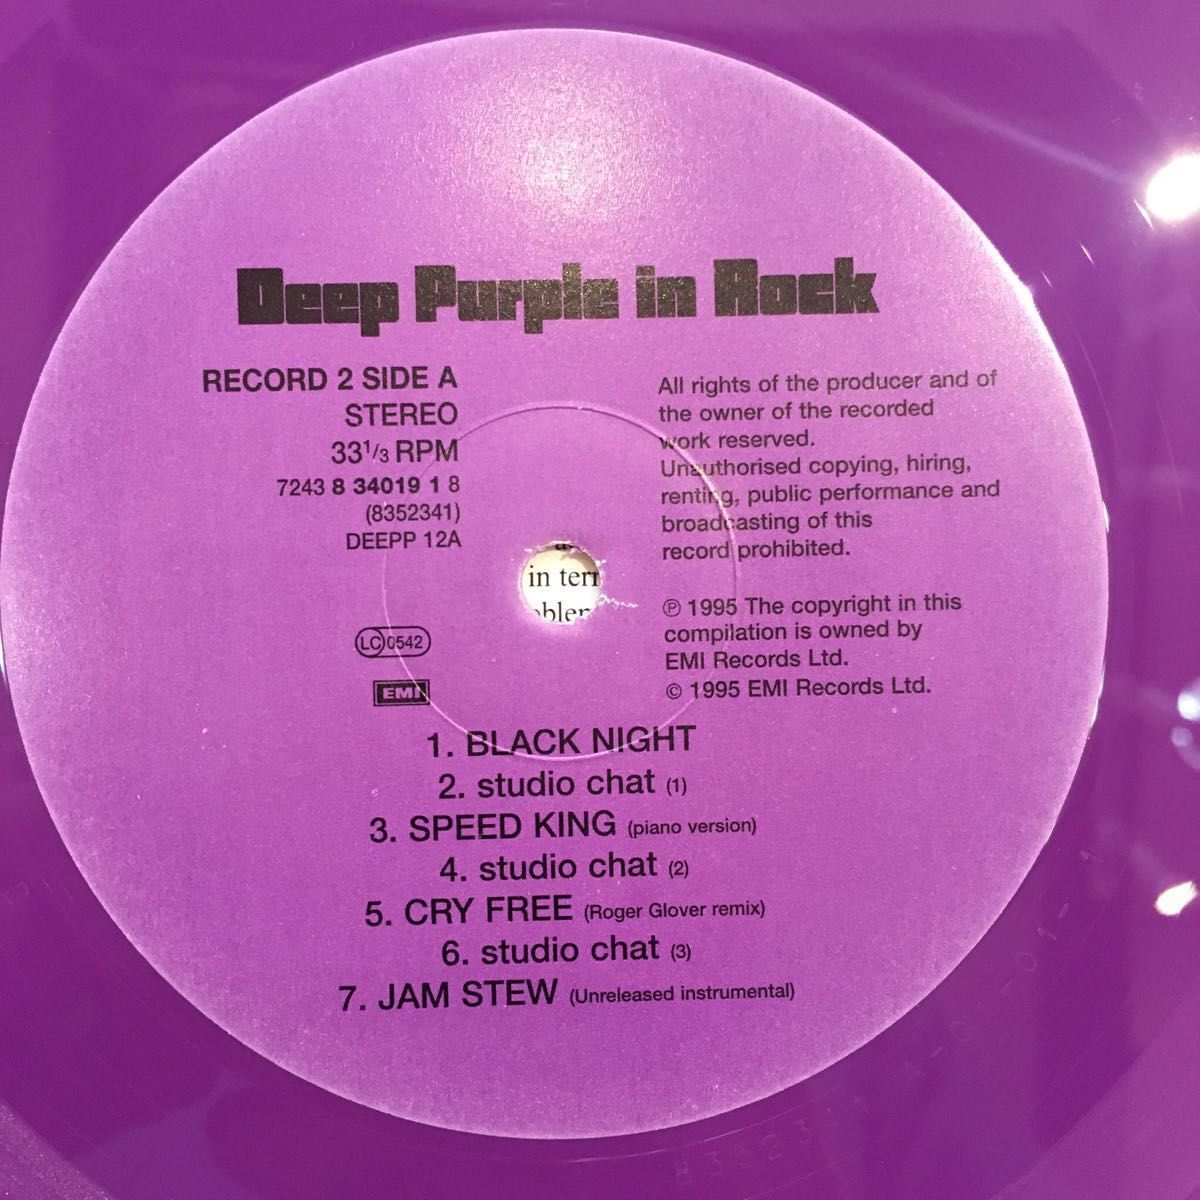 Deep Purple in Rock ディープ パープル イン ロック カラーディスク アナログUK盤 2枚組 美盤